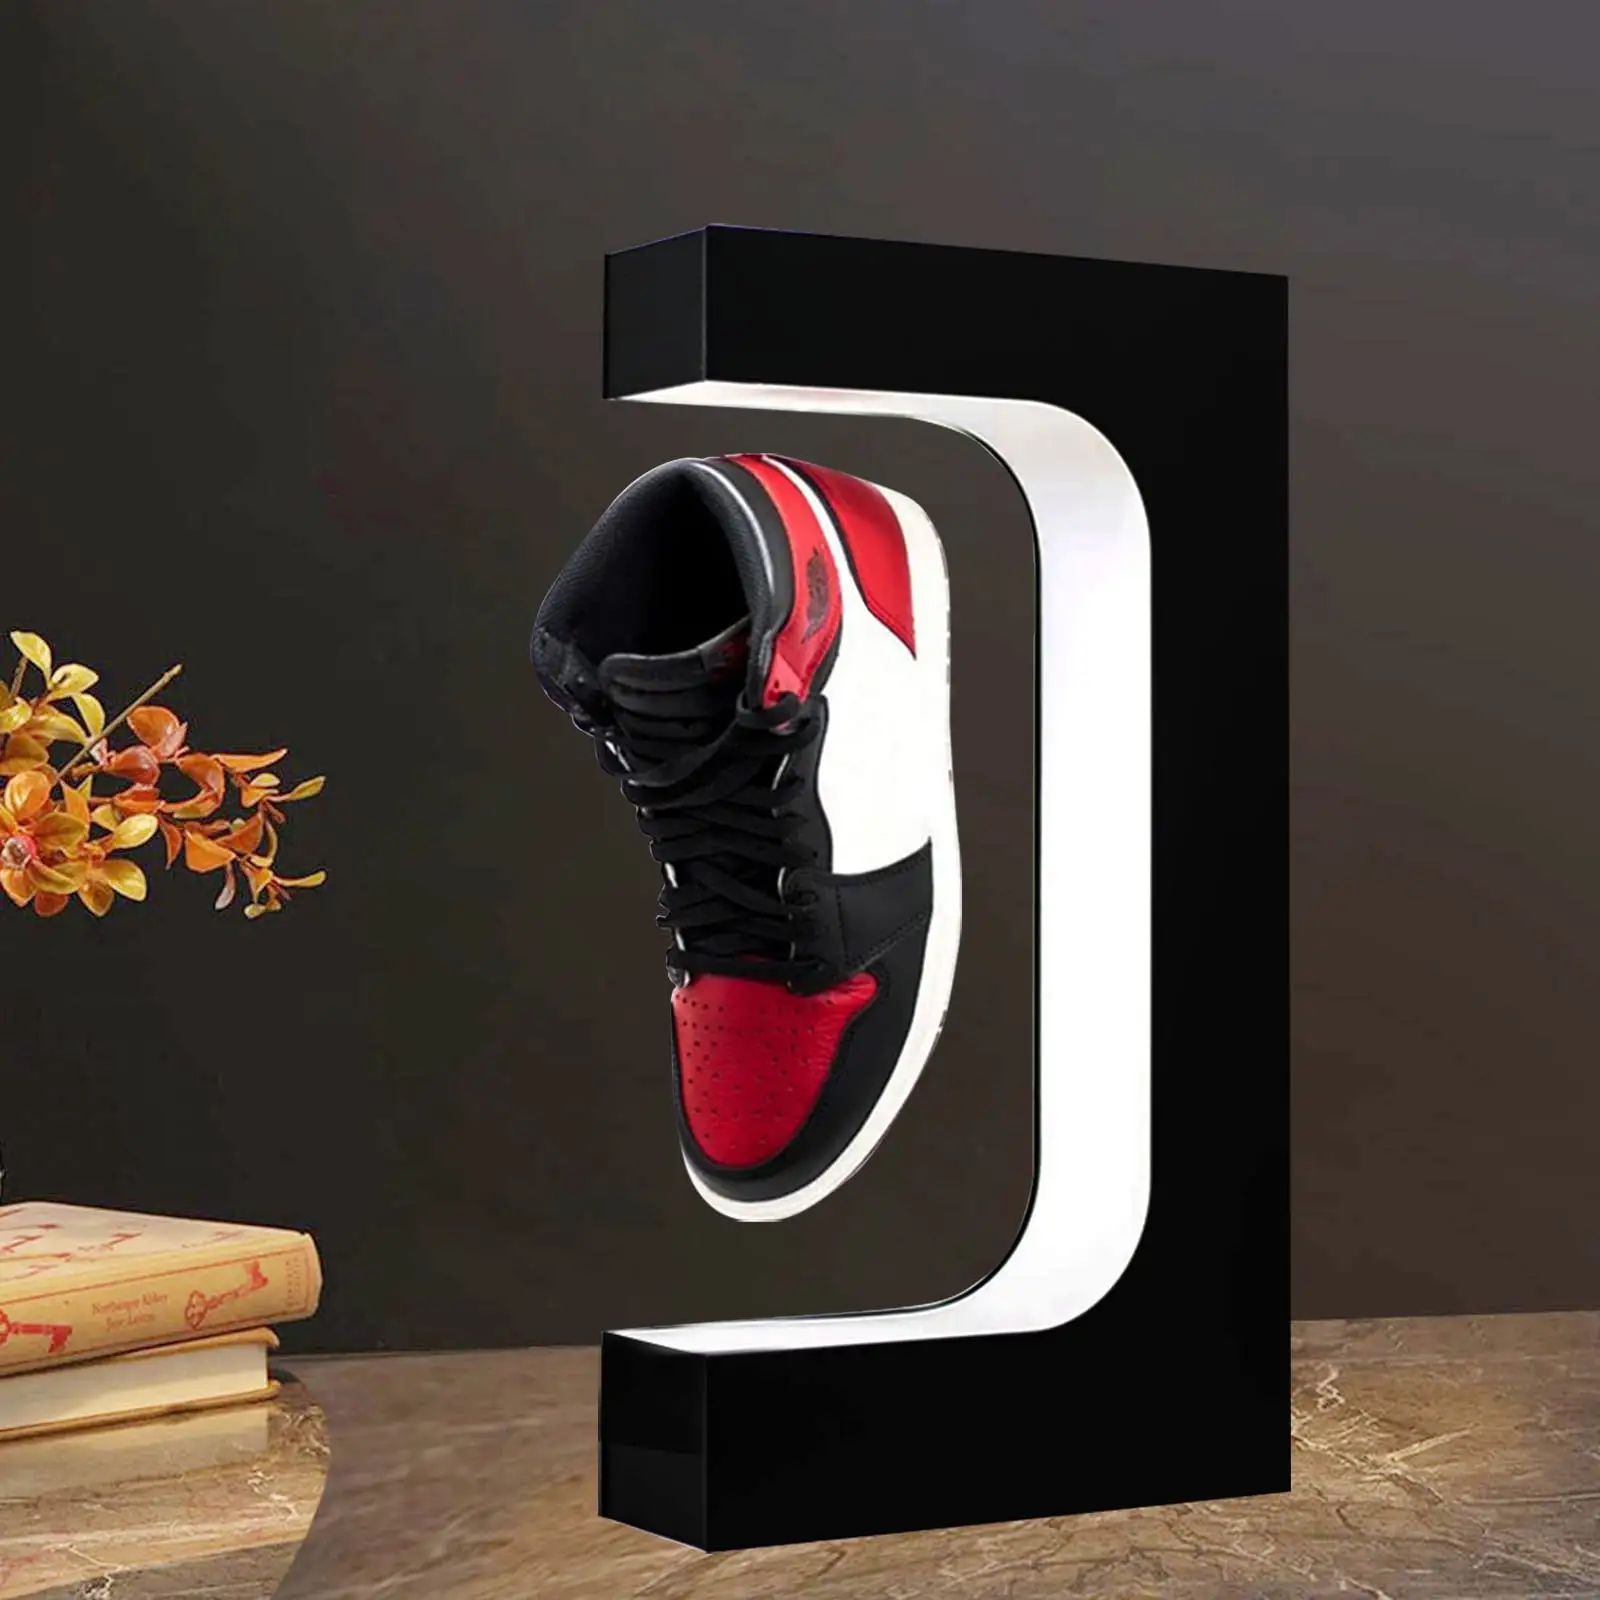 Soporte de zapatillas de deporte flotante de exhibición de zapatos de levitación acrílica personalizada con control remoto en luz LED para tienda de coleccionistas de zapatos